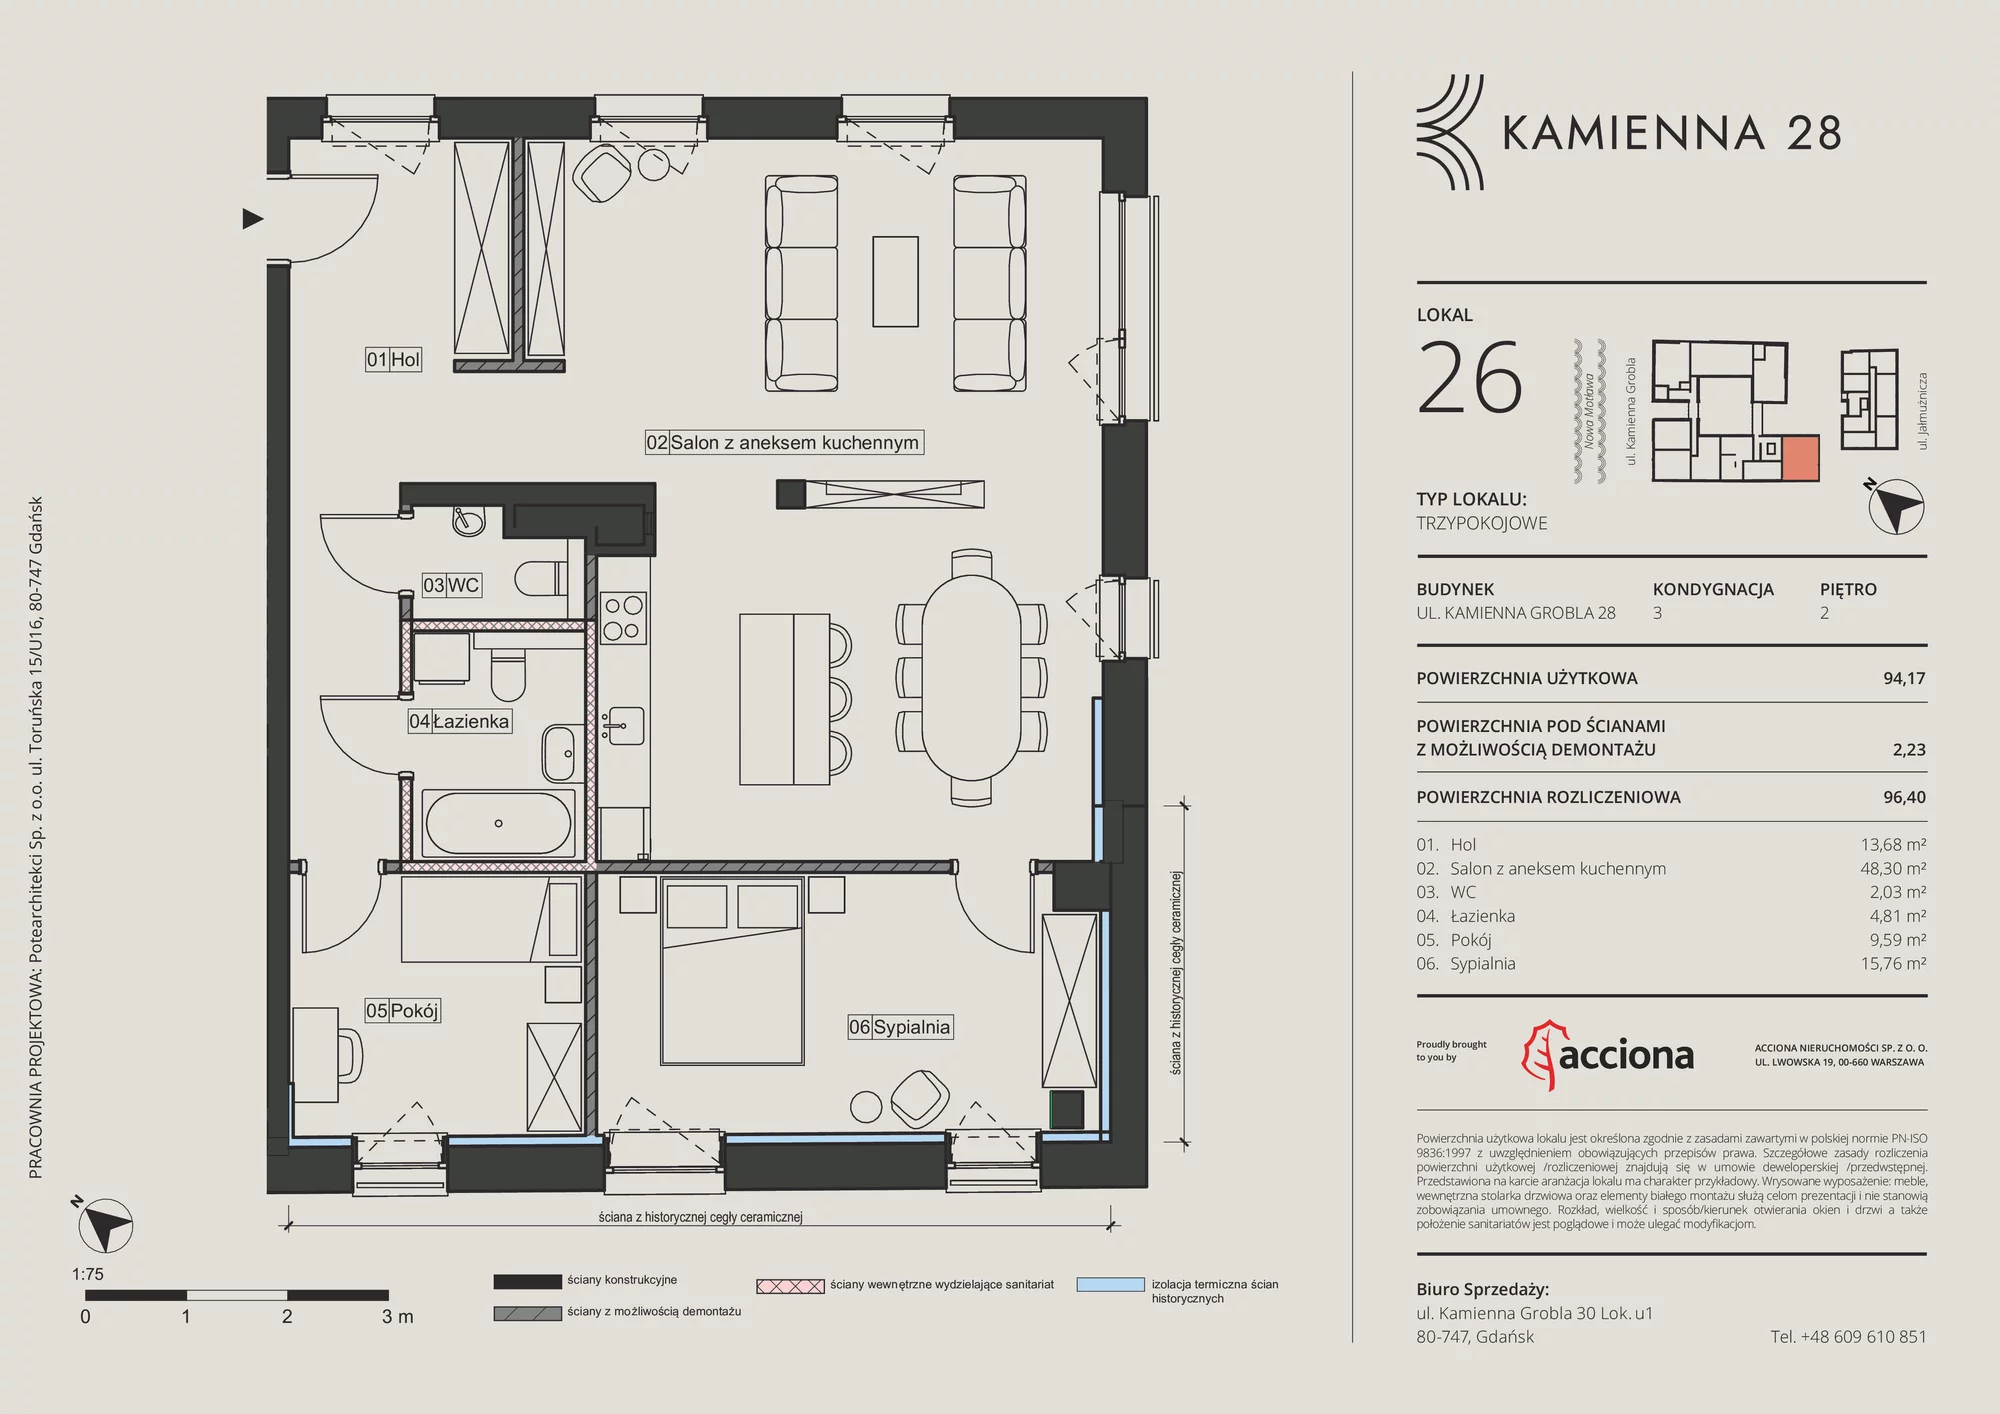 Apartament 96,40 m², piętro 2, oferta nr 28.26, Kamienna 28, Gdańsk, Śródmieście, Dolne Miasto, ul. Kamienna Grobla 28/29